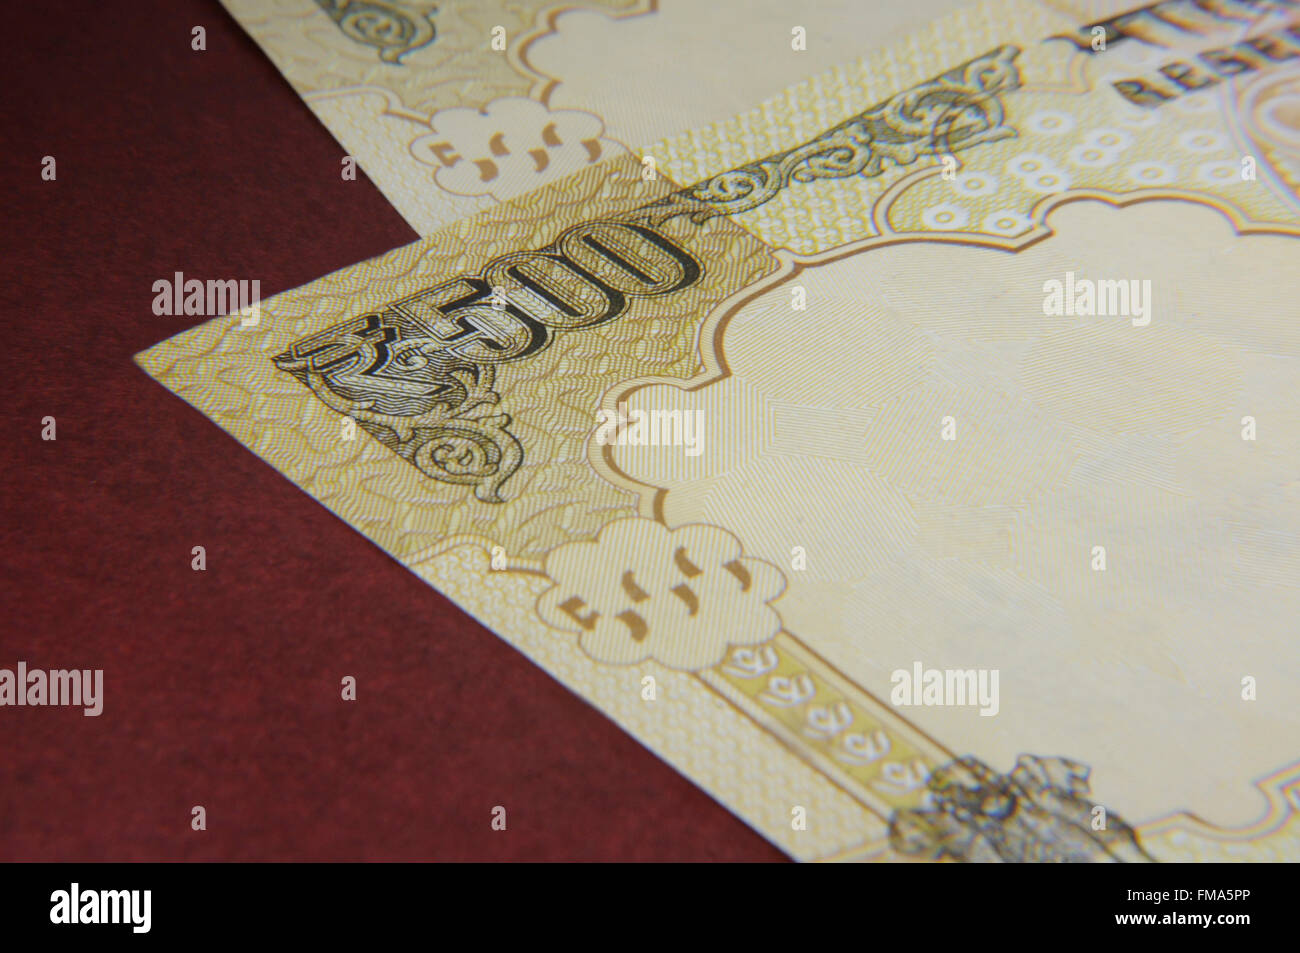 Indische Rupie Geldscheine (indische Währung) Stockfoto